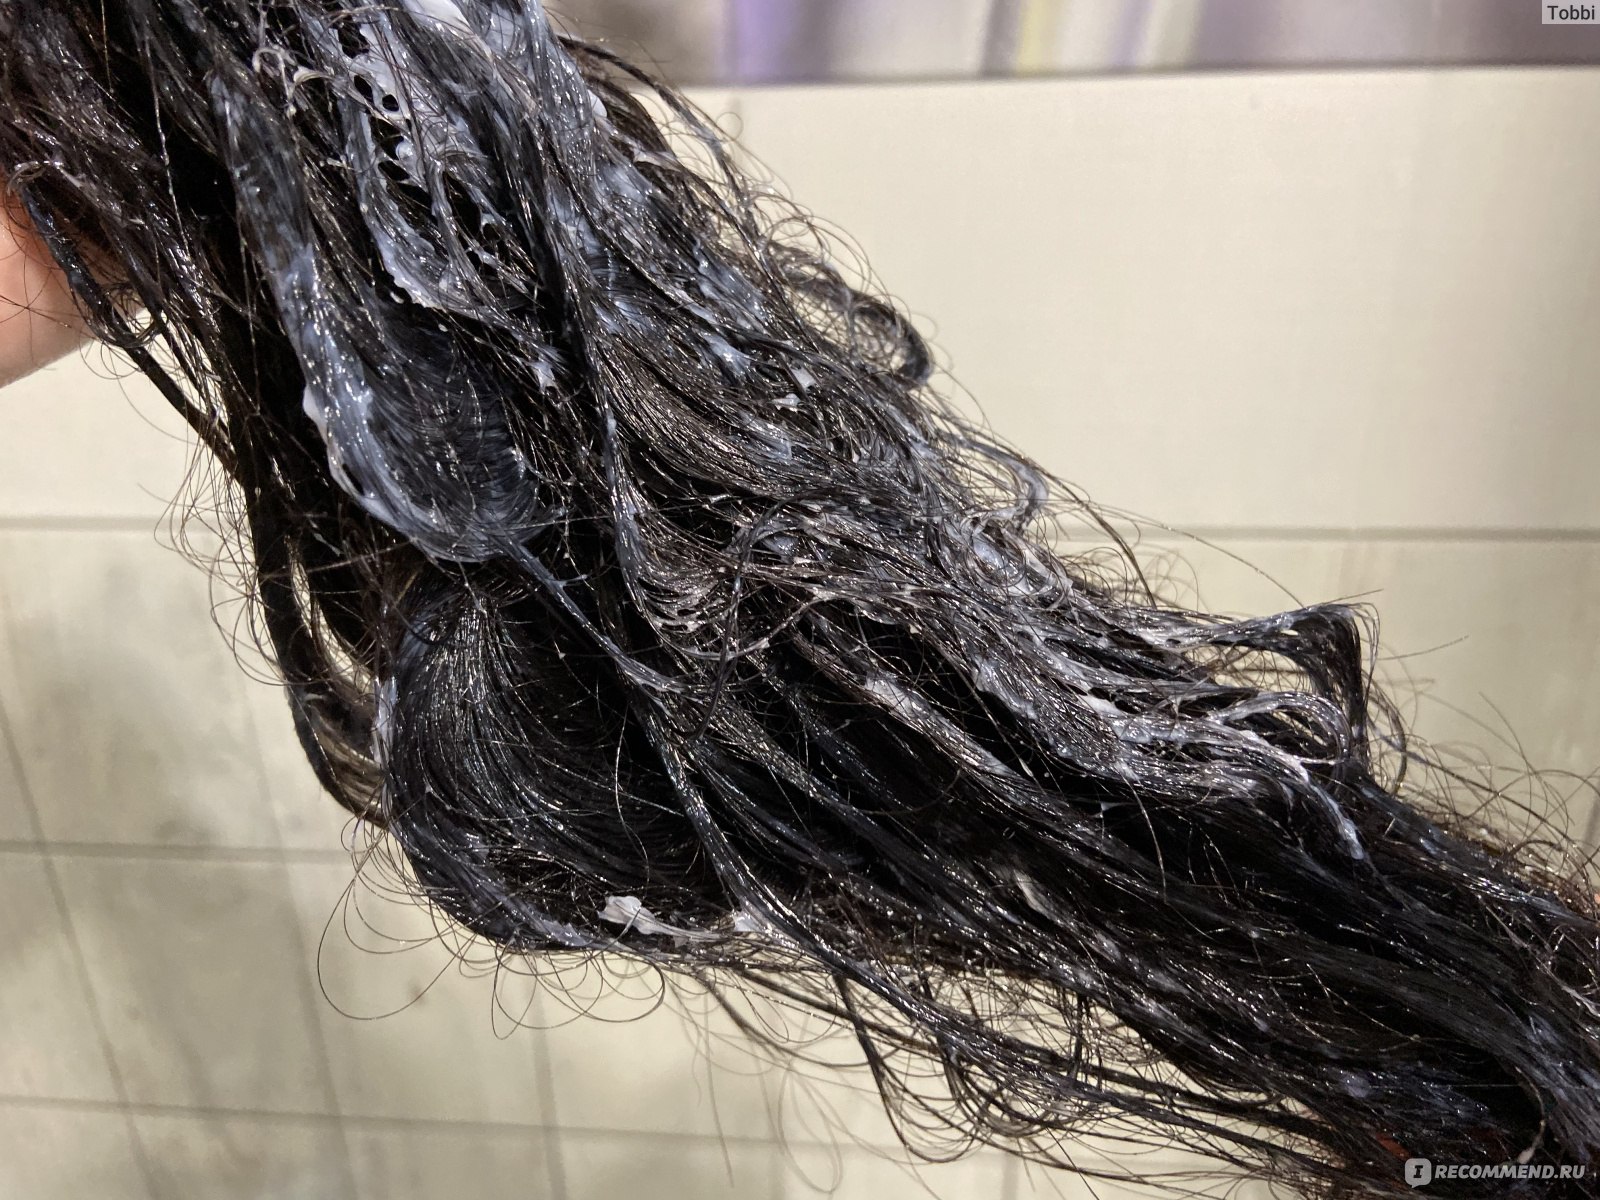 Восстановление сухих поврежденных волос